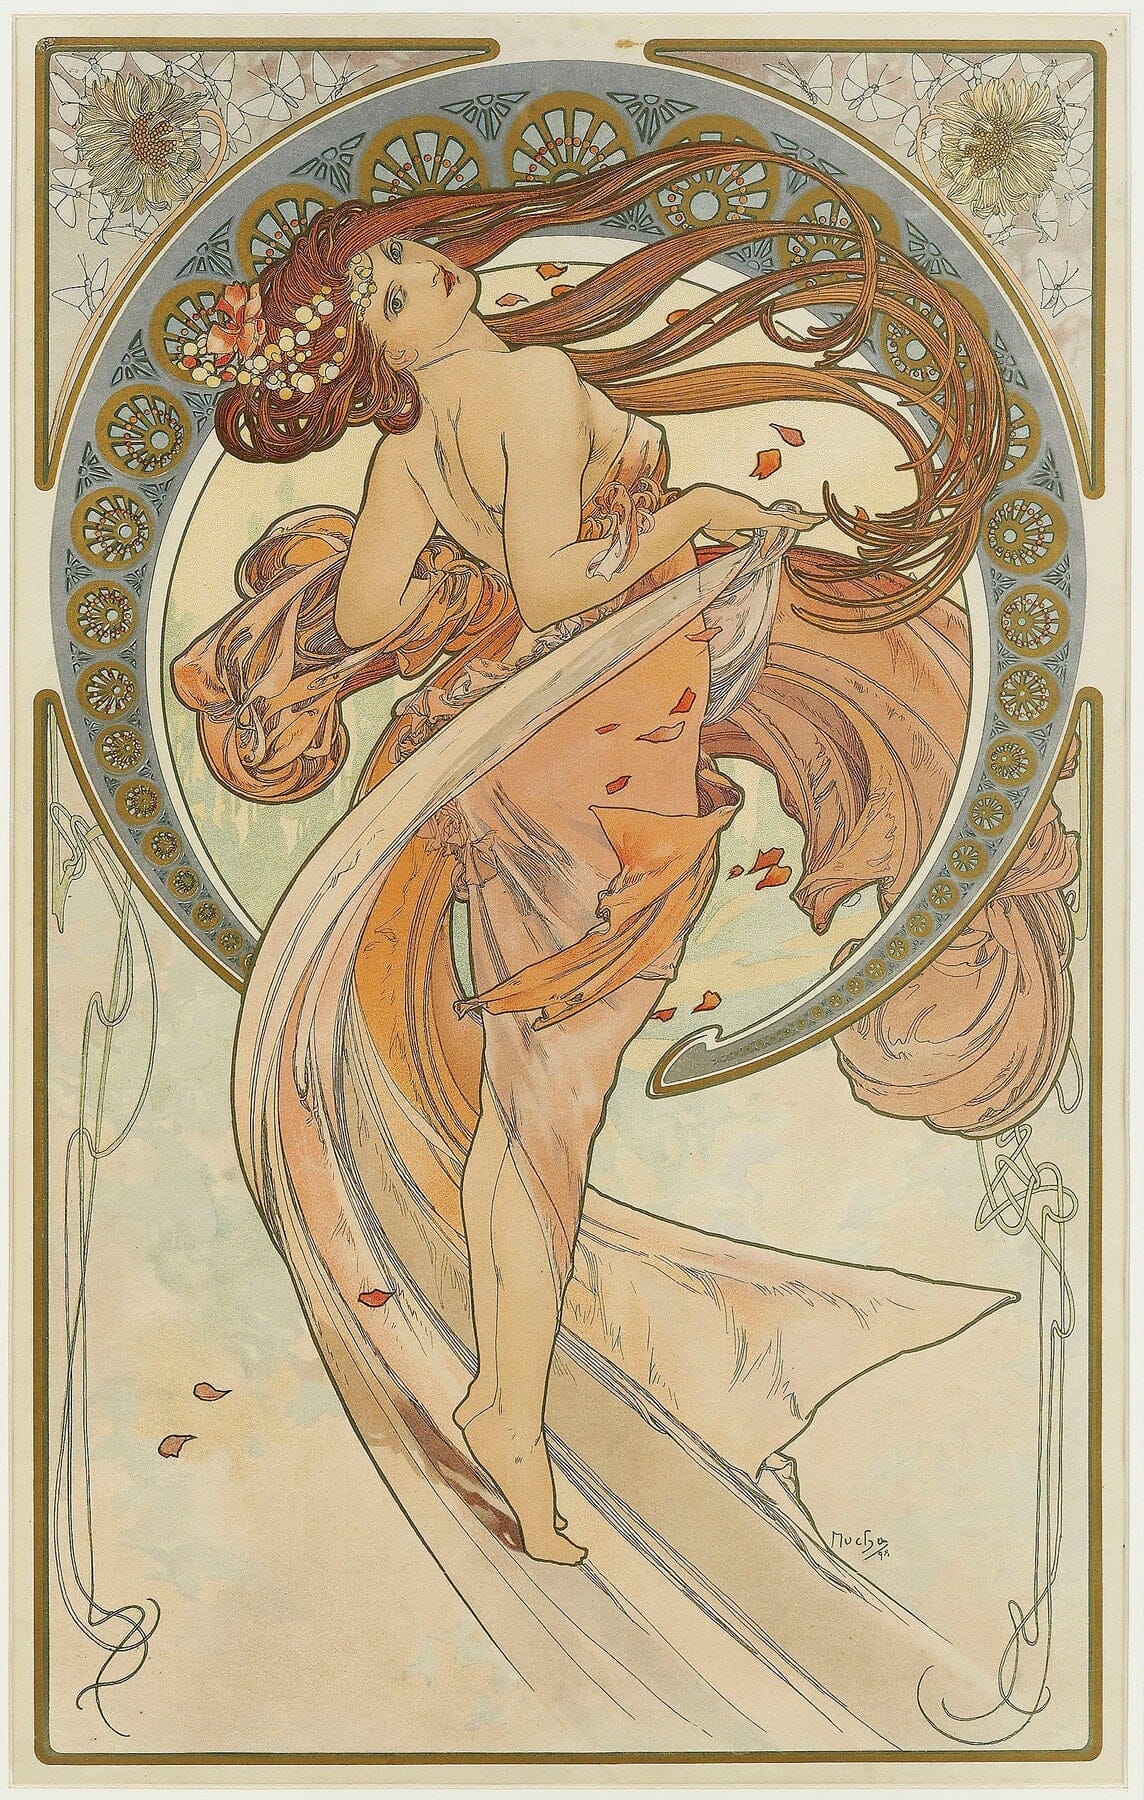 The Arts 2 (1898) | Art nouveau prints | Alphonse Mucha Posters, Prints, & Visual Artwork The Trumpet Shop Vintage Prints   